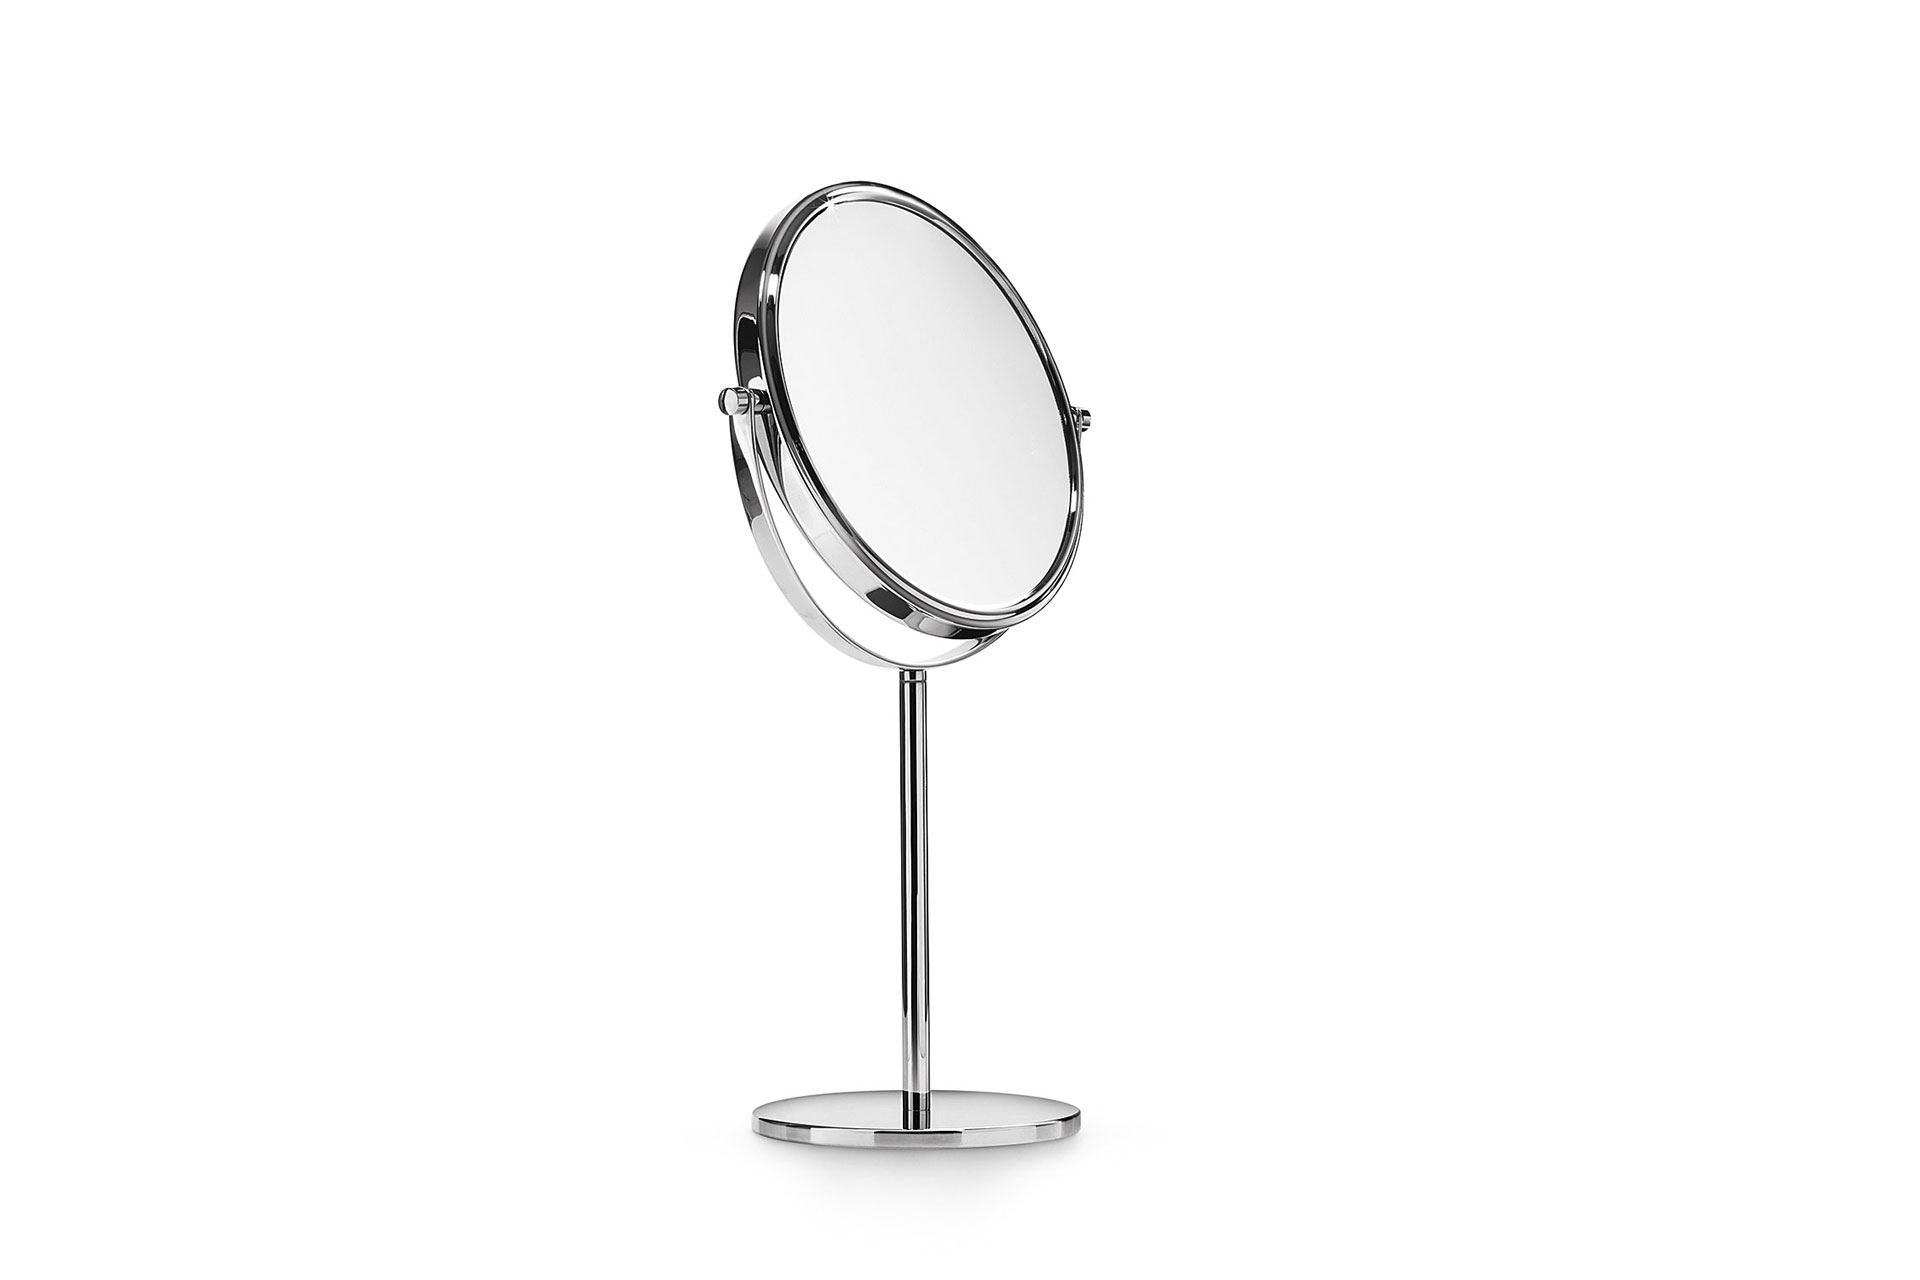 Specchio ingranditore 1 lato riflettente ed 1 lato ingrandente 3x da appoggio